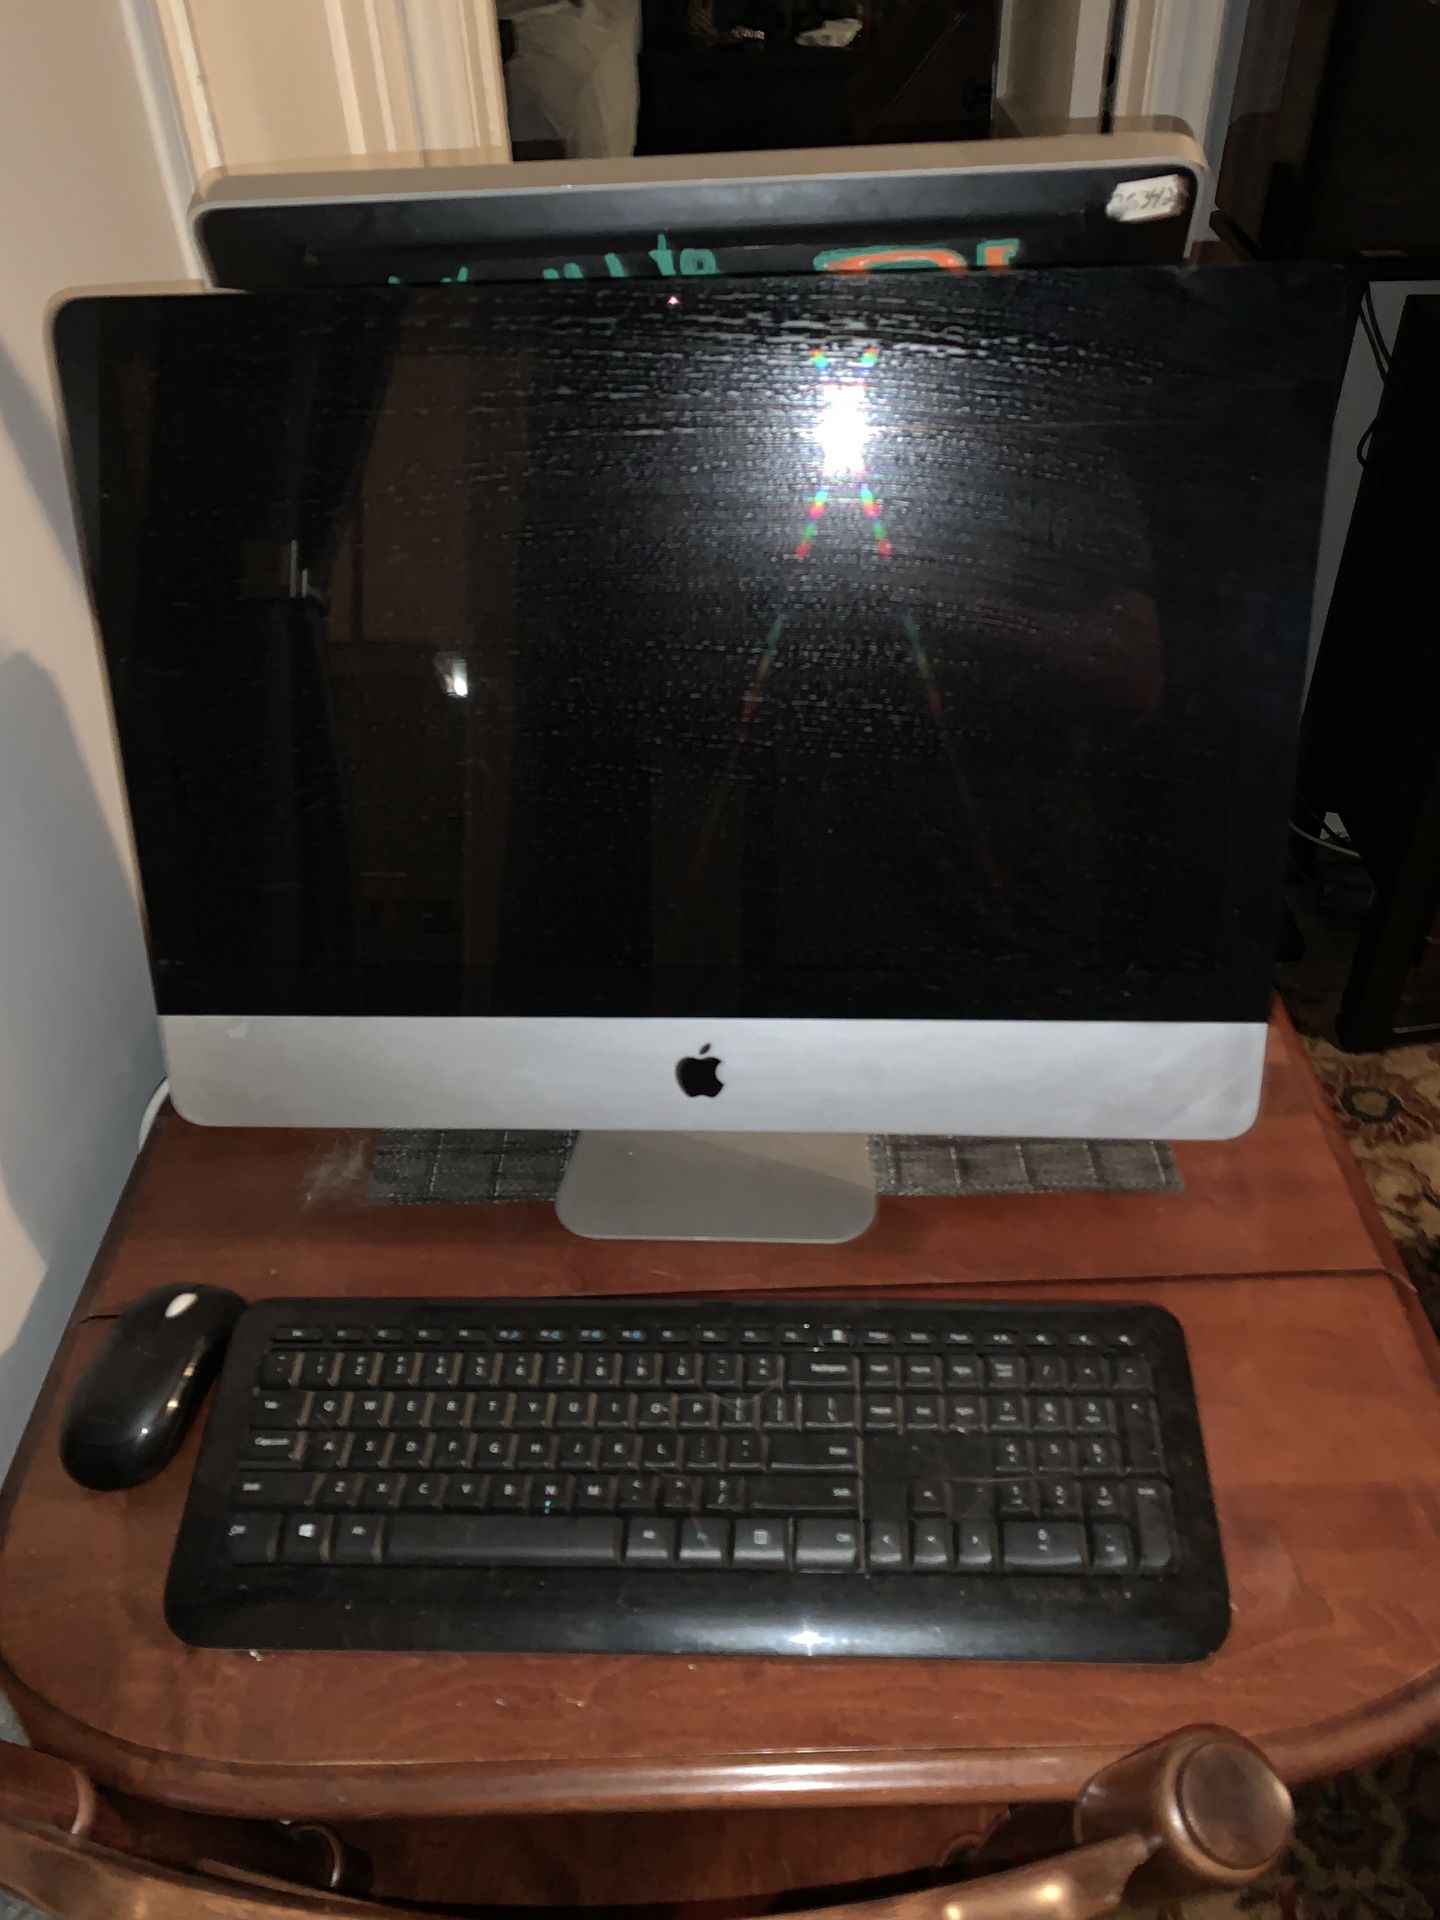 2009 iMac super clean